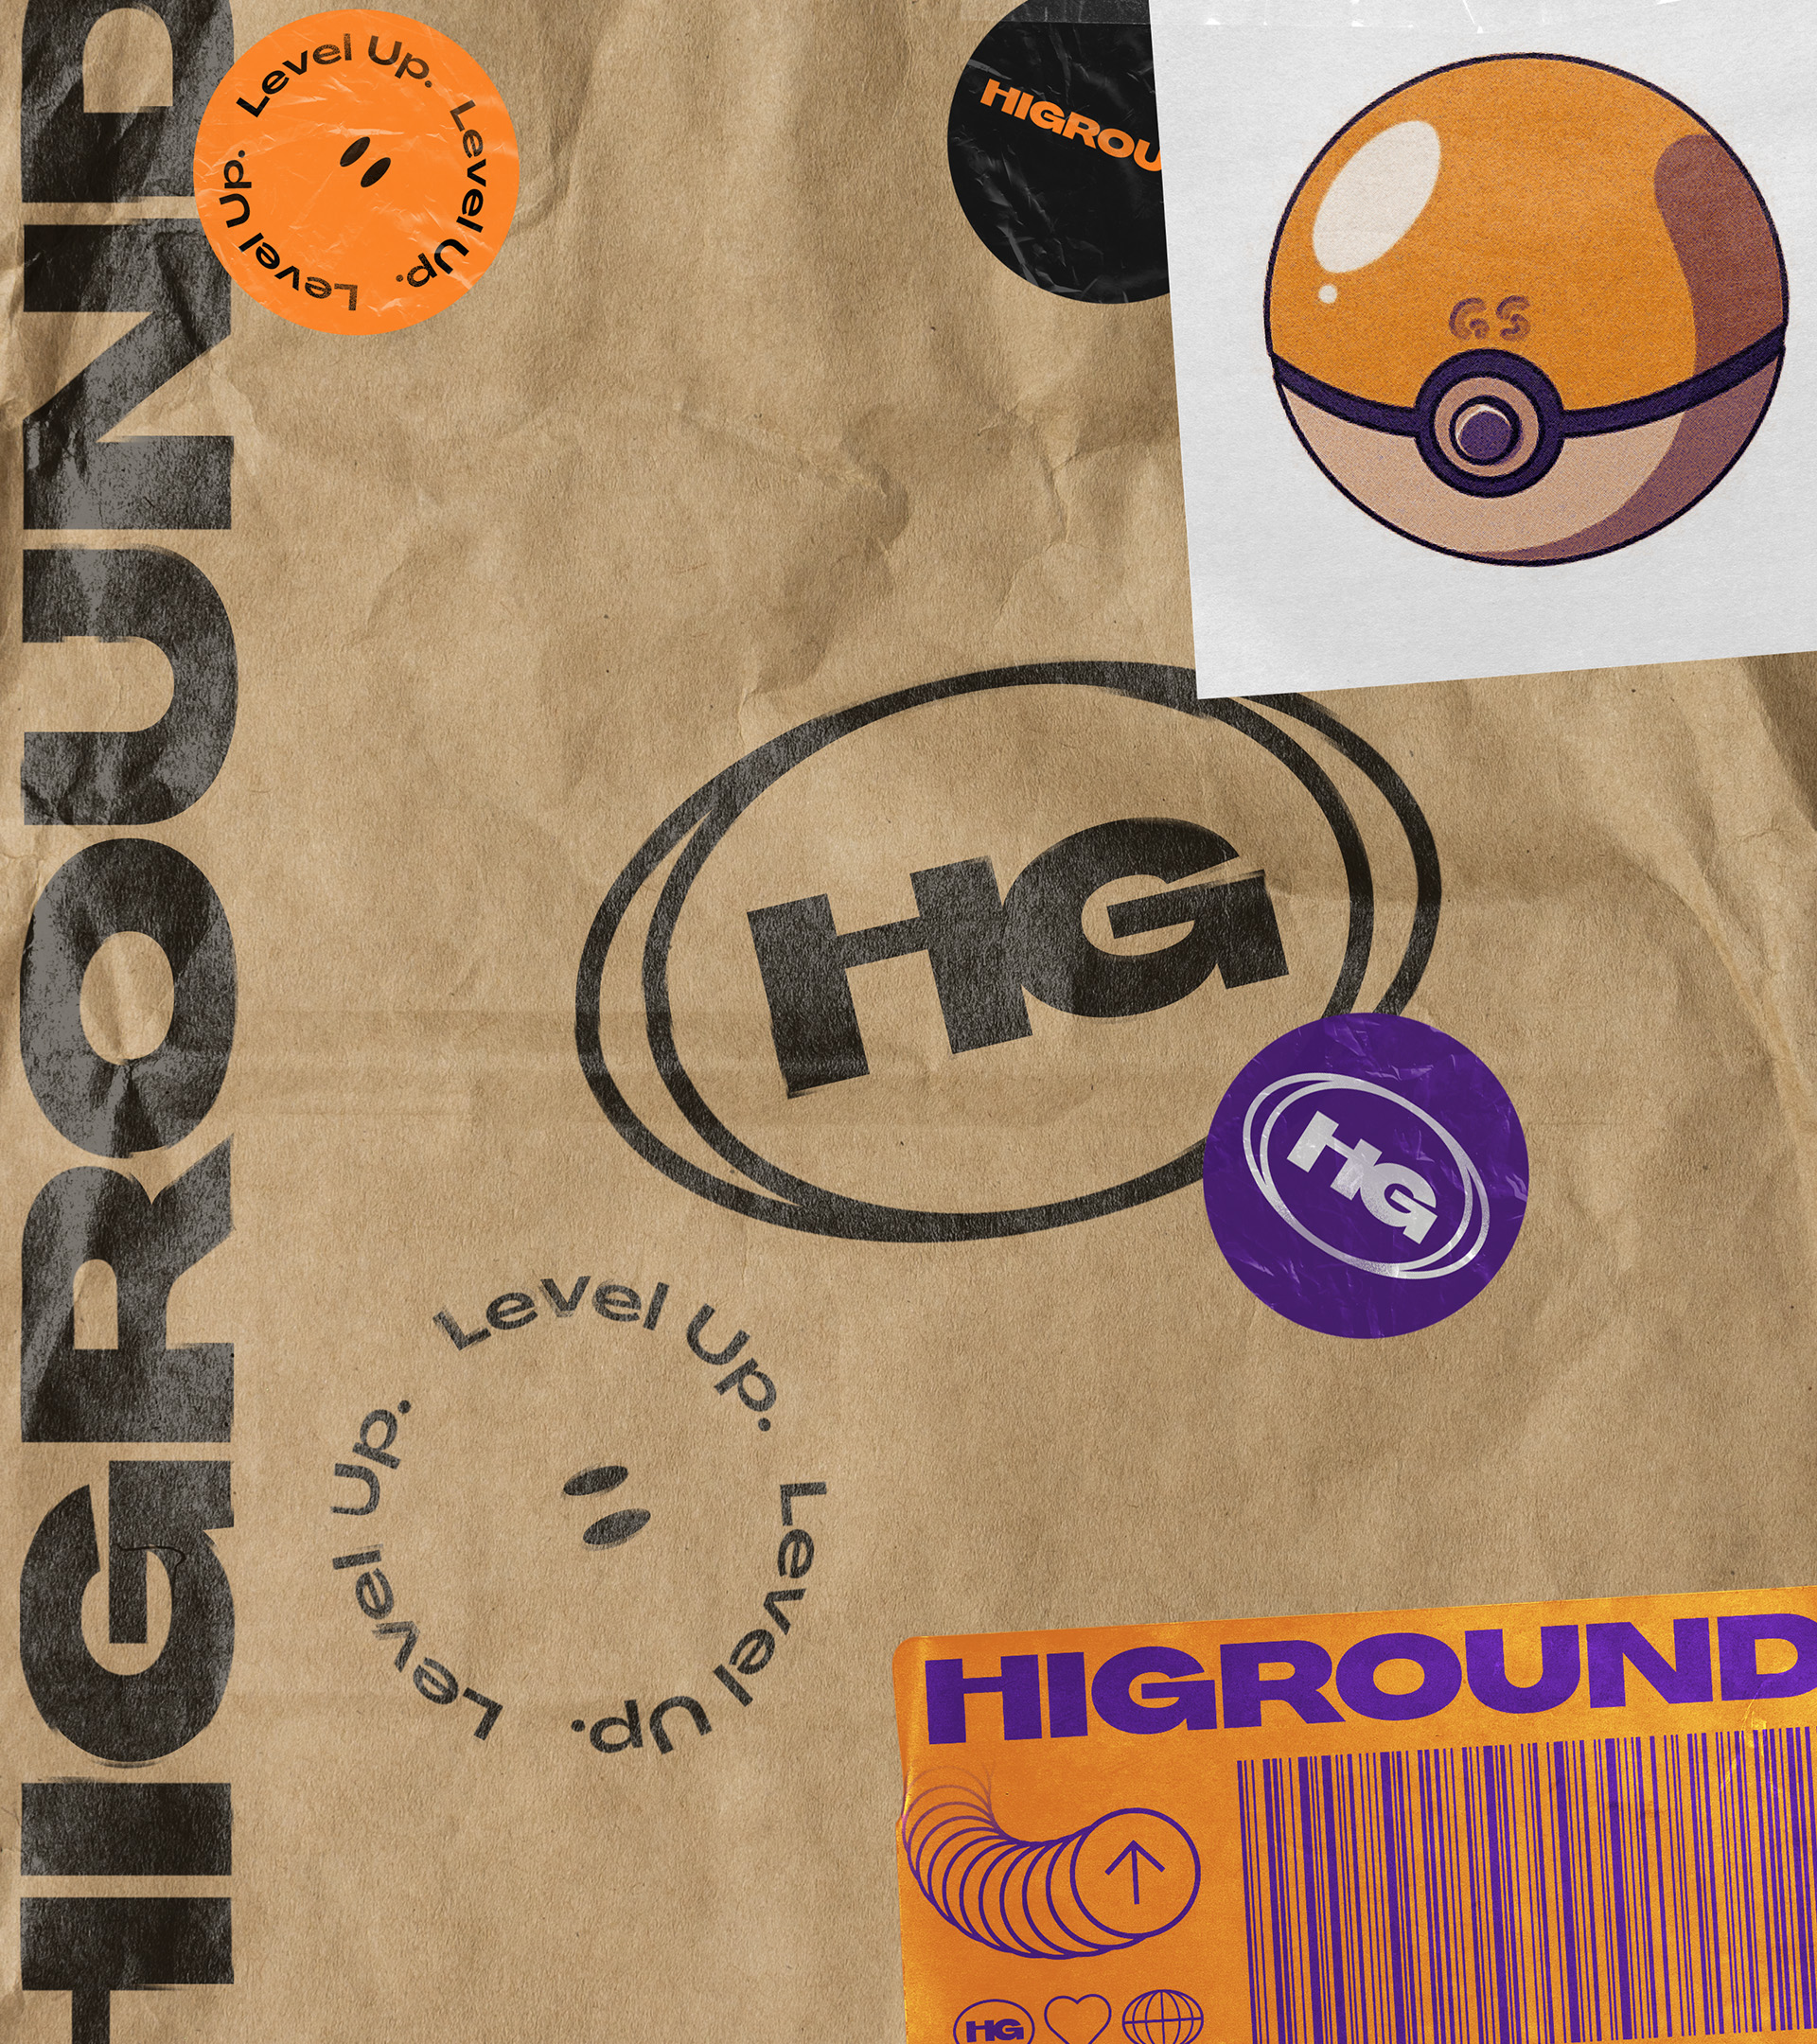 hg-bag-2